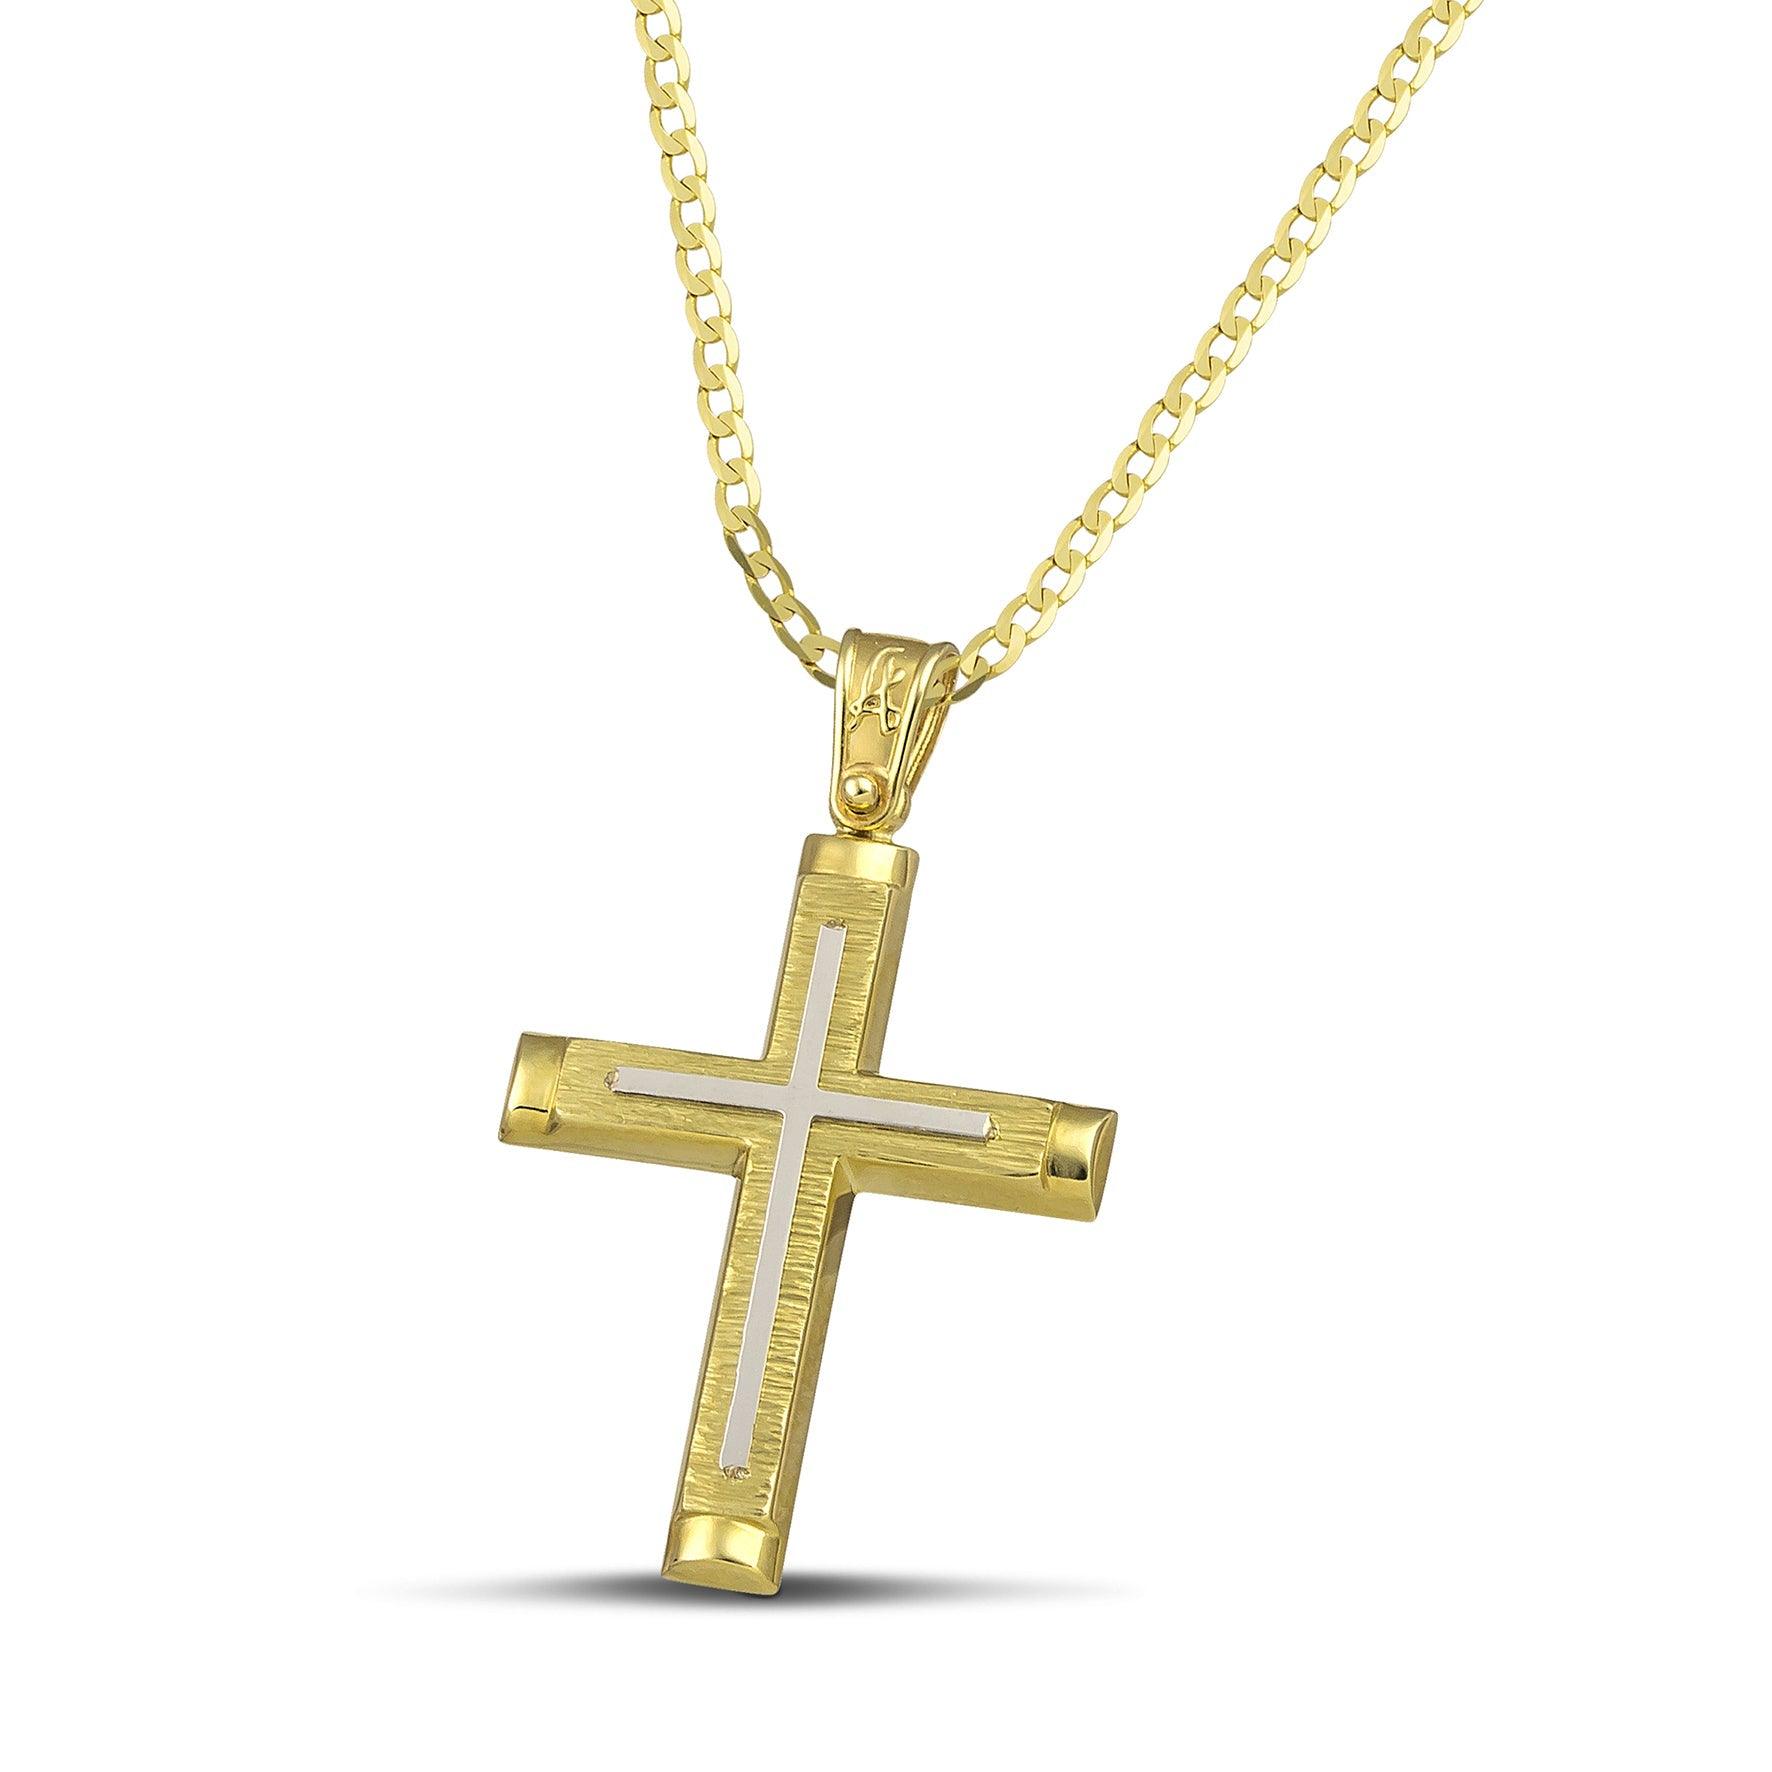 Χρυσός σταυρός Κ14 για γυναίκα, σαγρέ με λευκόχρυσο, περασμένος σε κλασσική αλυσίδα.